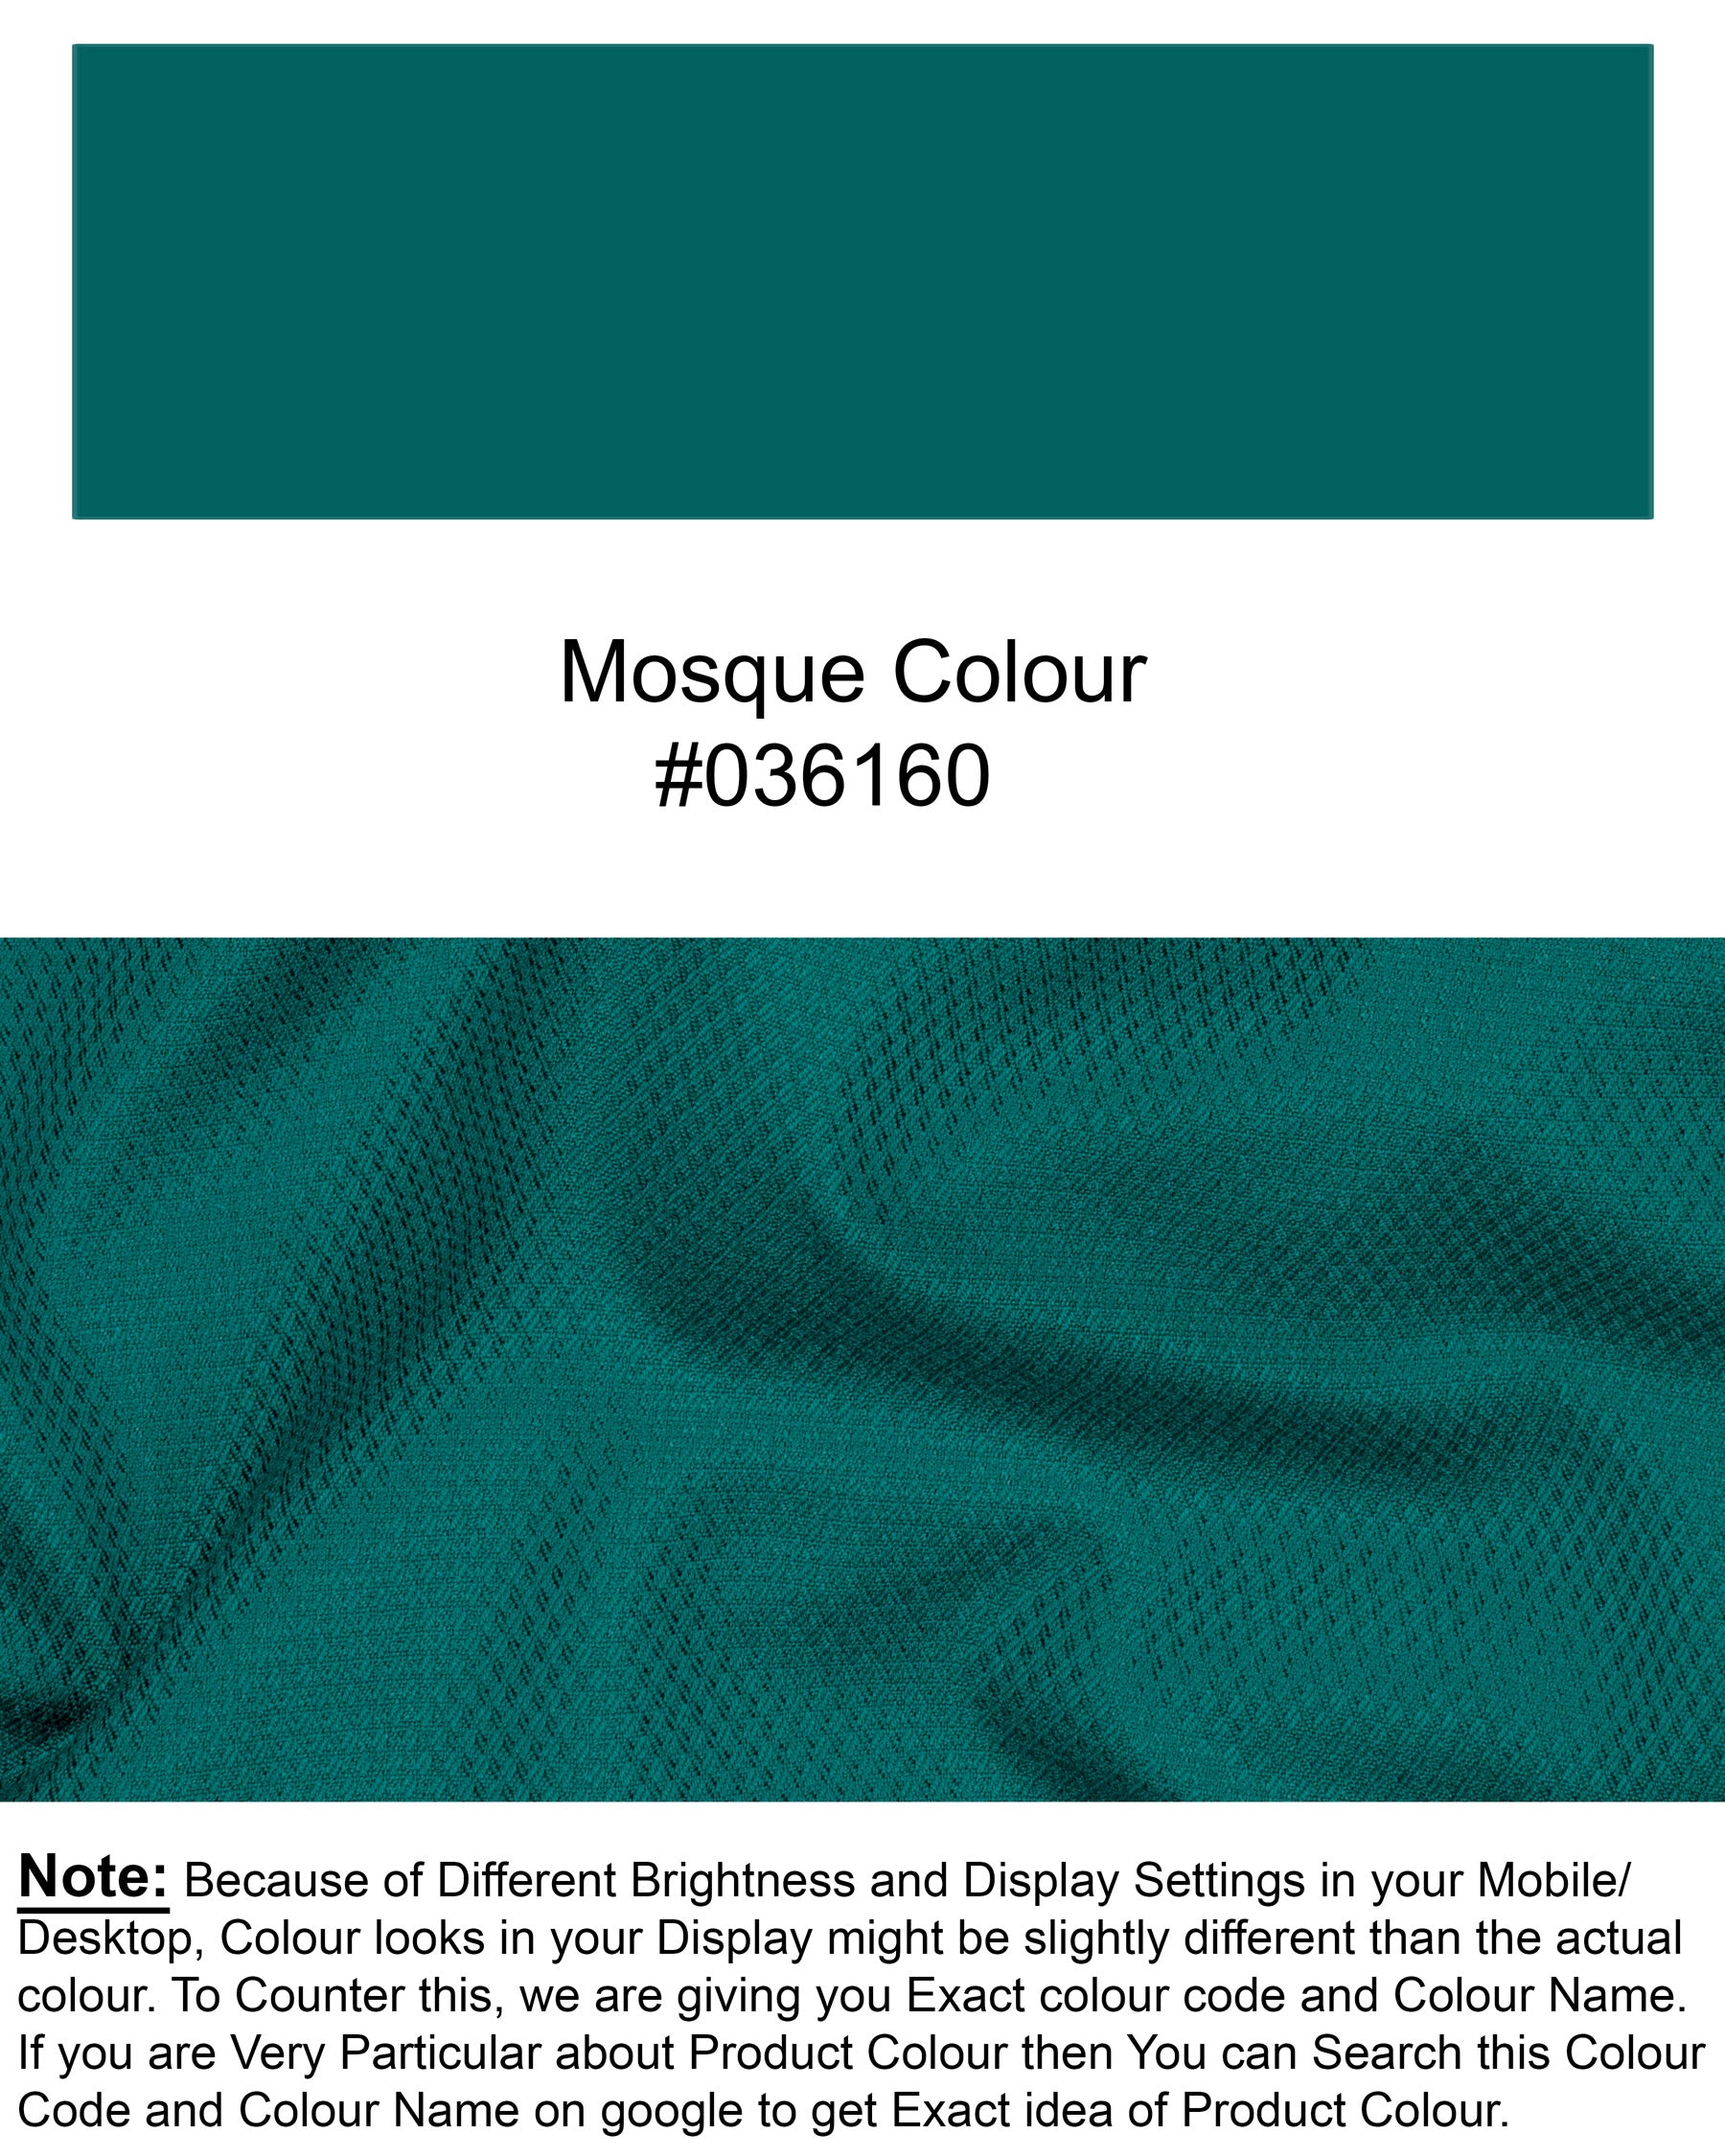 Mosque Green Wool Rich Tuxedo Blazer BL1468-BKL-36,BL1468-BKL-38,BL1468-BKL-40,BL1468-BKL-42,BL1468-BKL-44,BL1468-BKL-46,BL1468-BKL-48,BL1468-BKL-50,BL1468-BKL-52,BL1468-BKL-54,BL1468-BKL-56,BL1468-BKL-58,BL1468-BKL-60